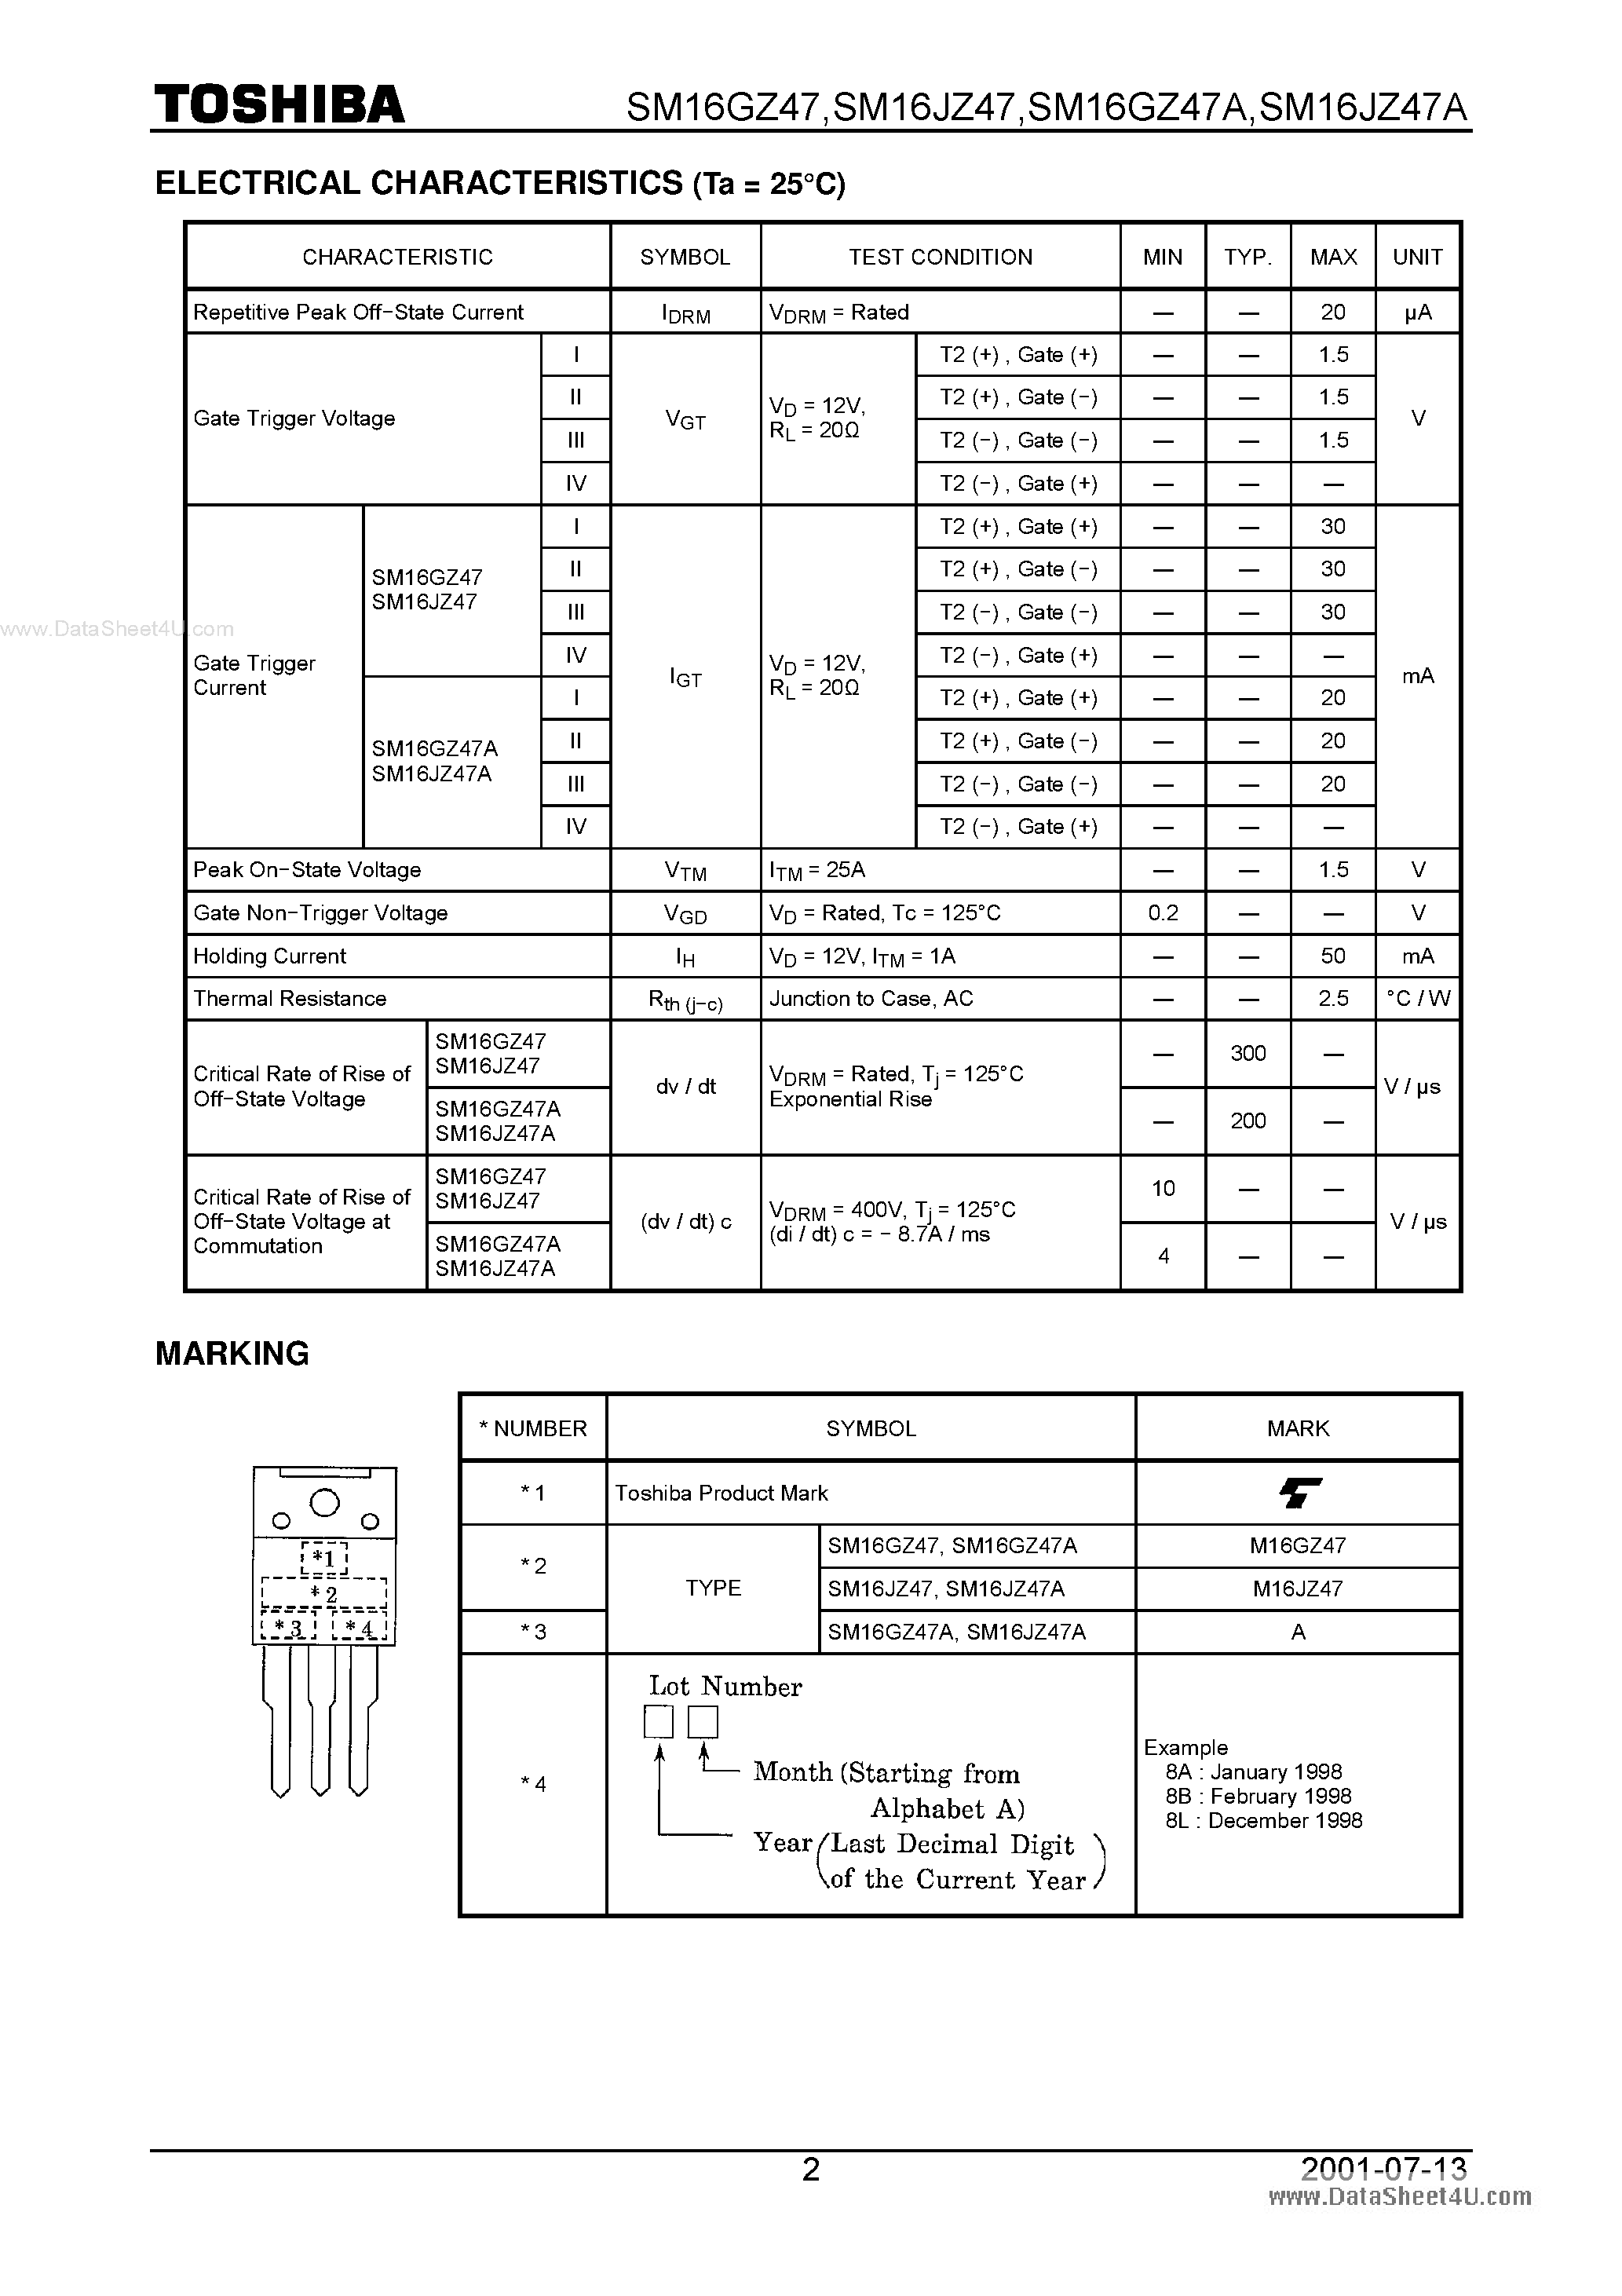 Datasheet M16JZ47 - Search -----> SM16JZ47A page 2